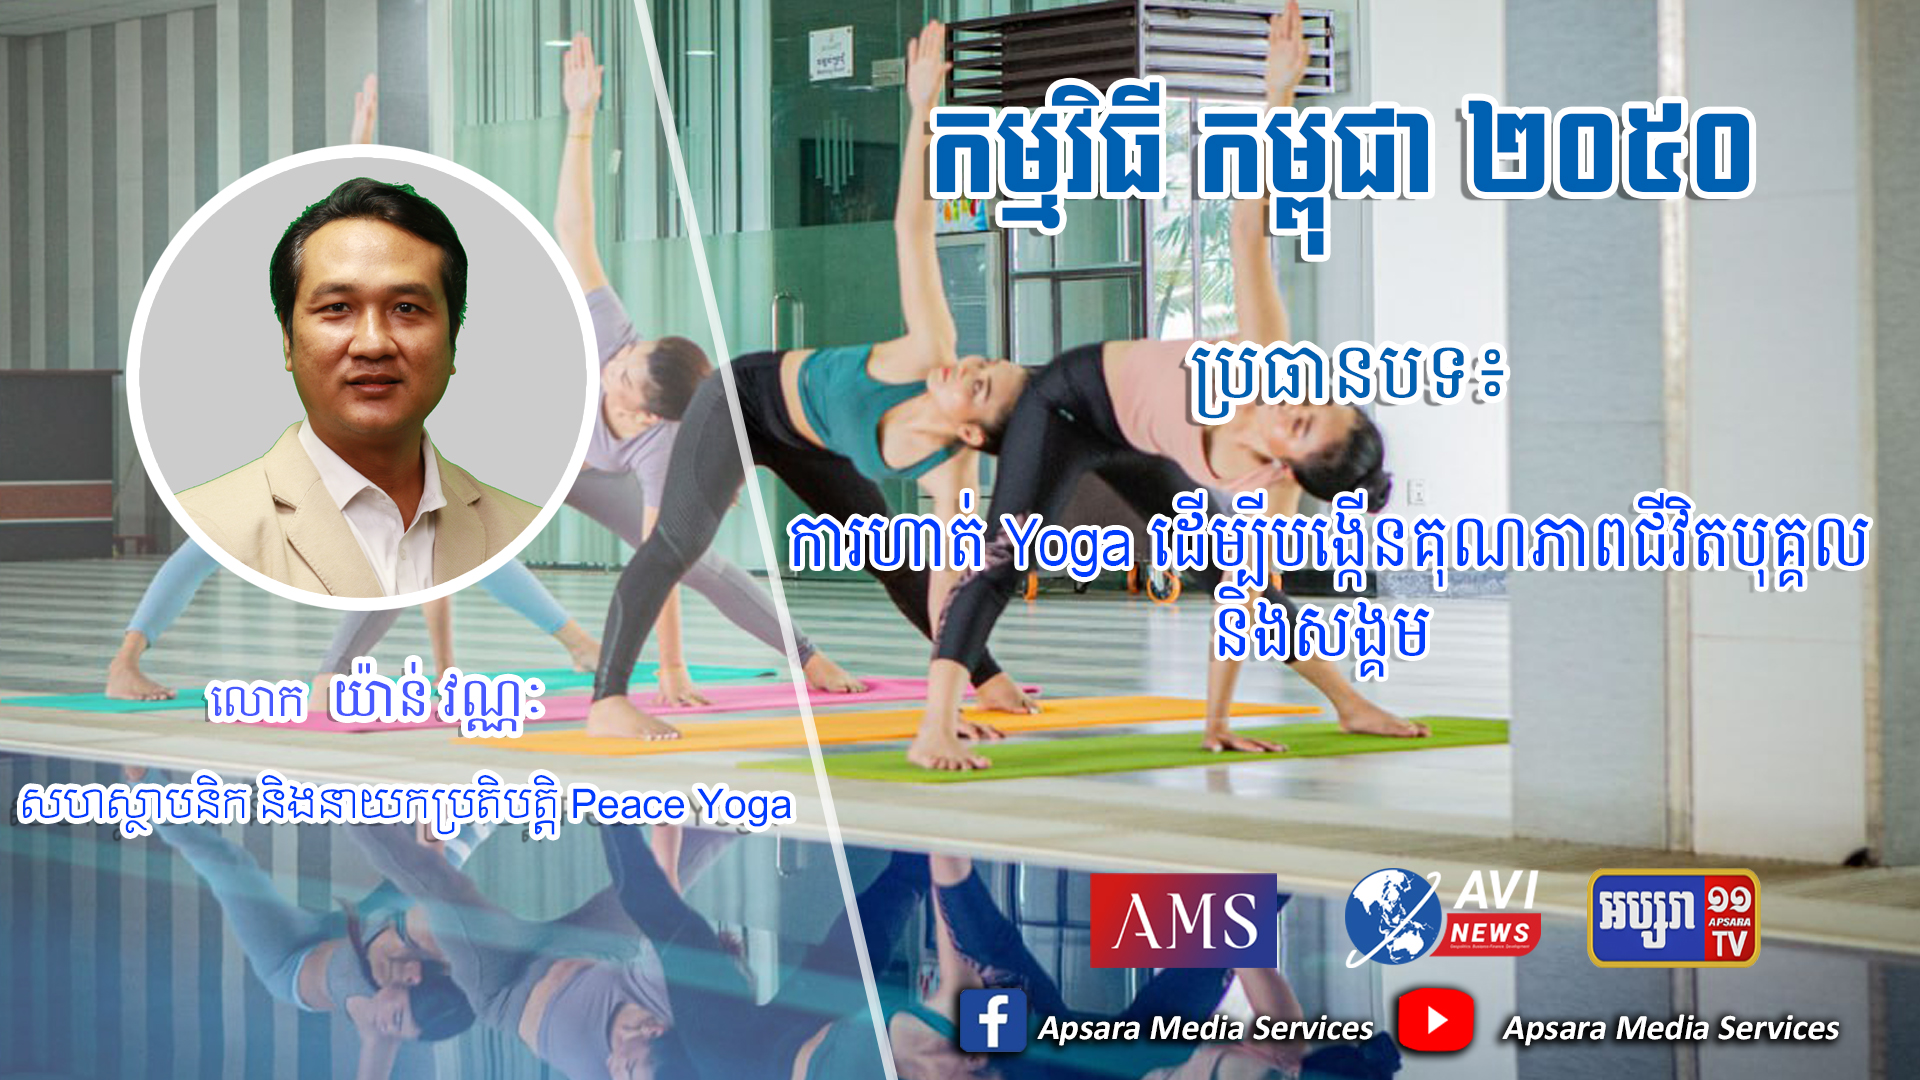 Cambodia2050 Ep58: ការហាត់ Yoga ដើម្បីបង្កើនគុណភាពជីវិតបុគ្គល និងសង្គម